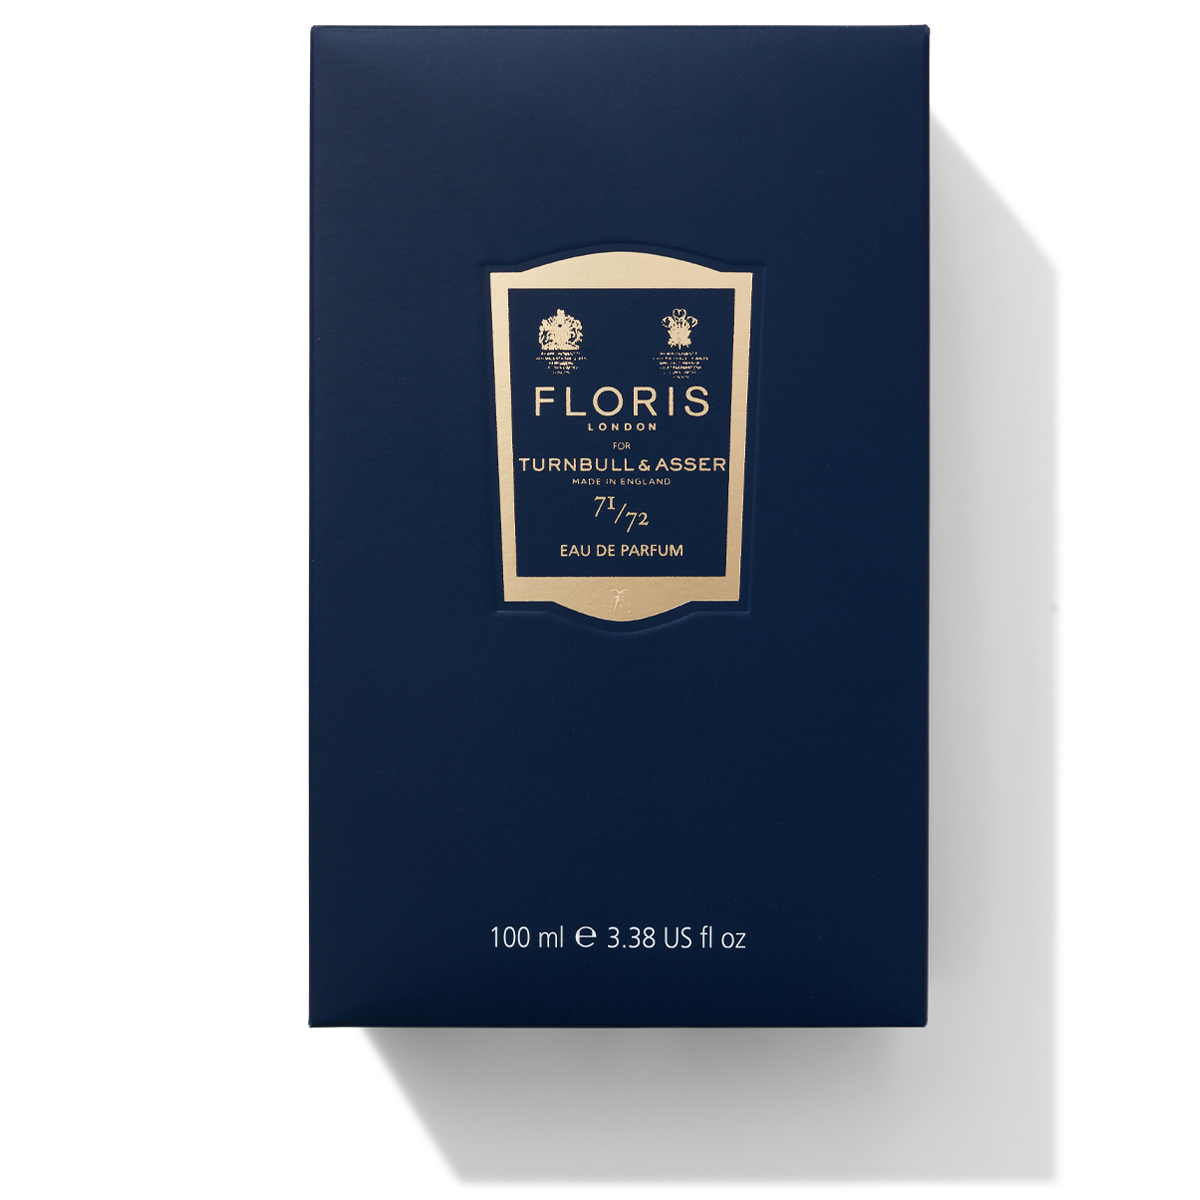 100ml box for Floris London 71/72 Eau de Parfum